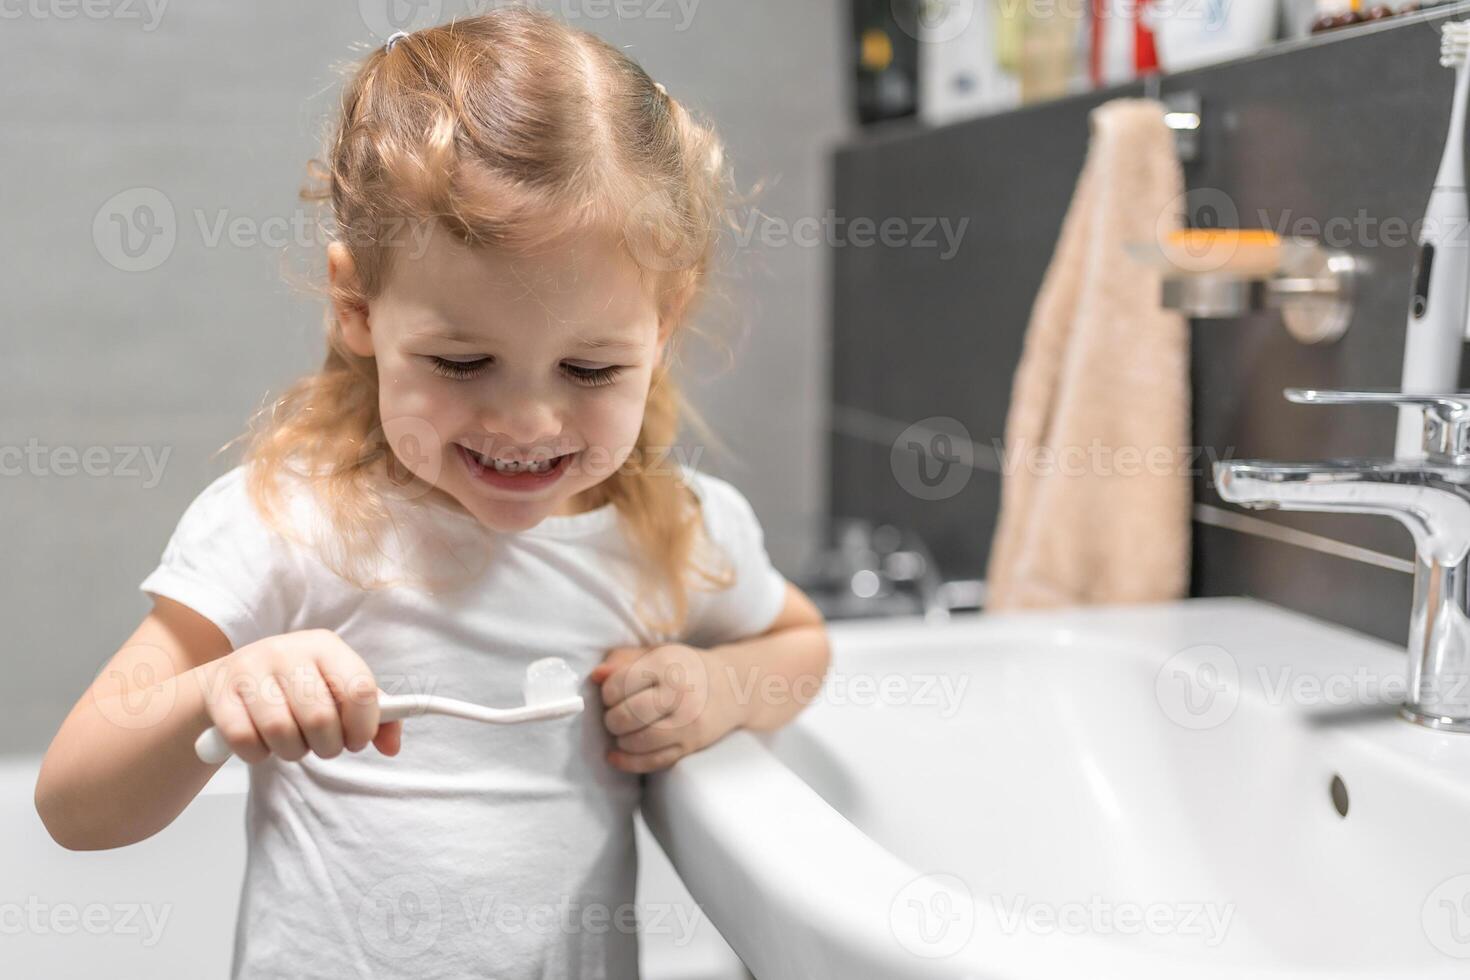 feliz criança pequena menina escovar dentes dentro a banho foto